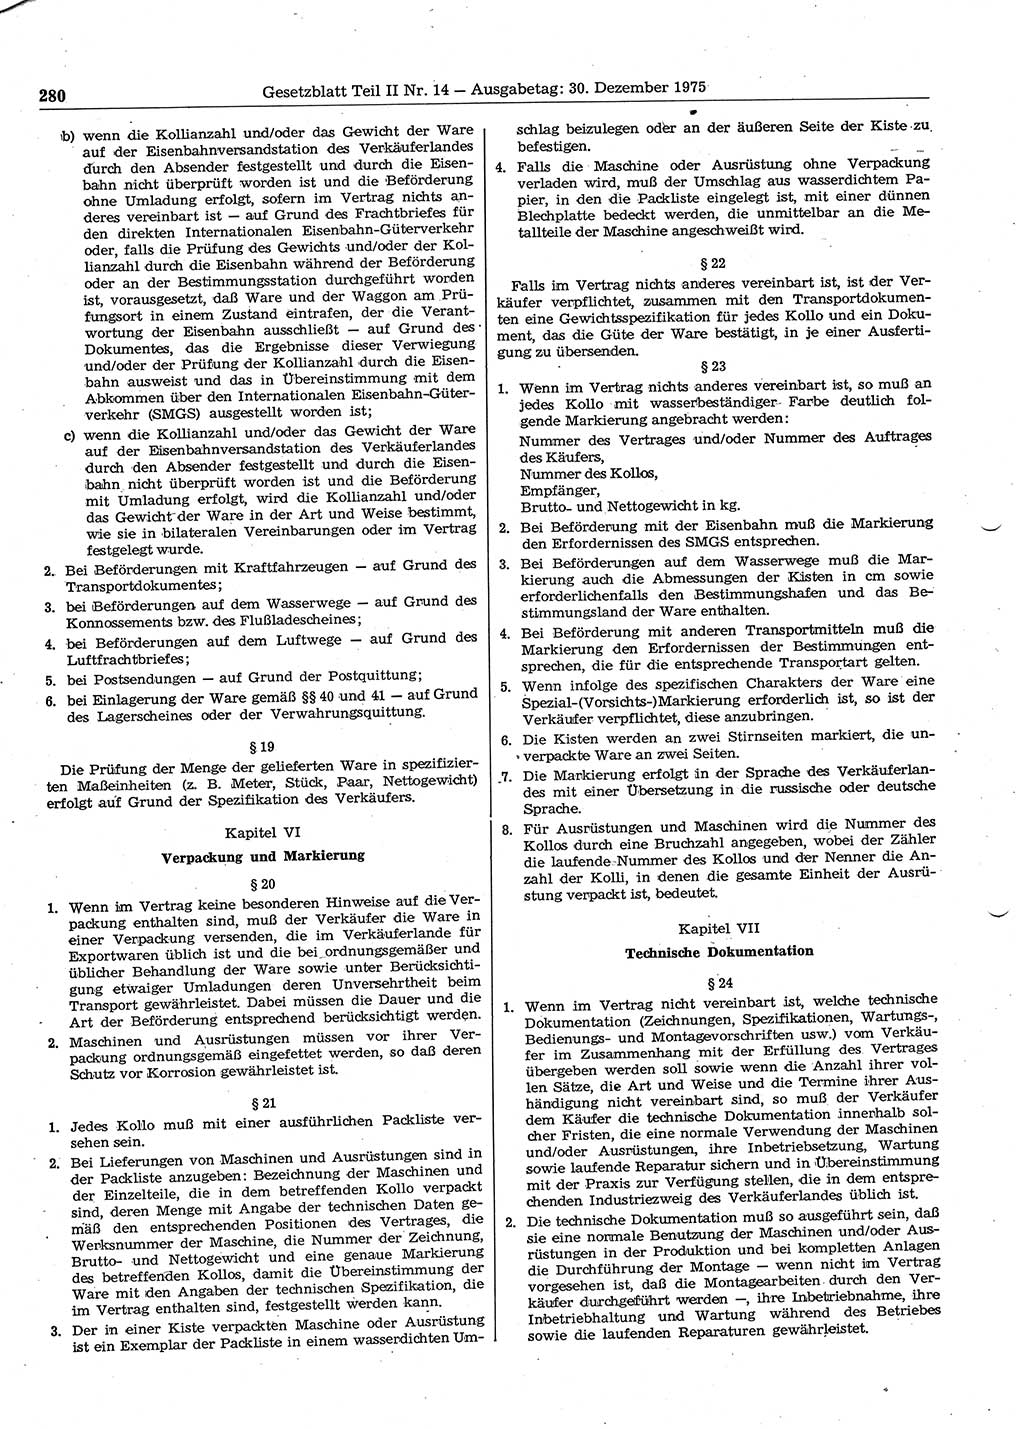 Gesetzblatt (GBl.) der Deutschen Demokratischen Republik (DDR) Teil ⅠⅠ 1975, Seite 280 (GBl. DDR ⅠⅠ 1975, S. 280)